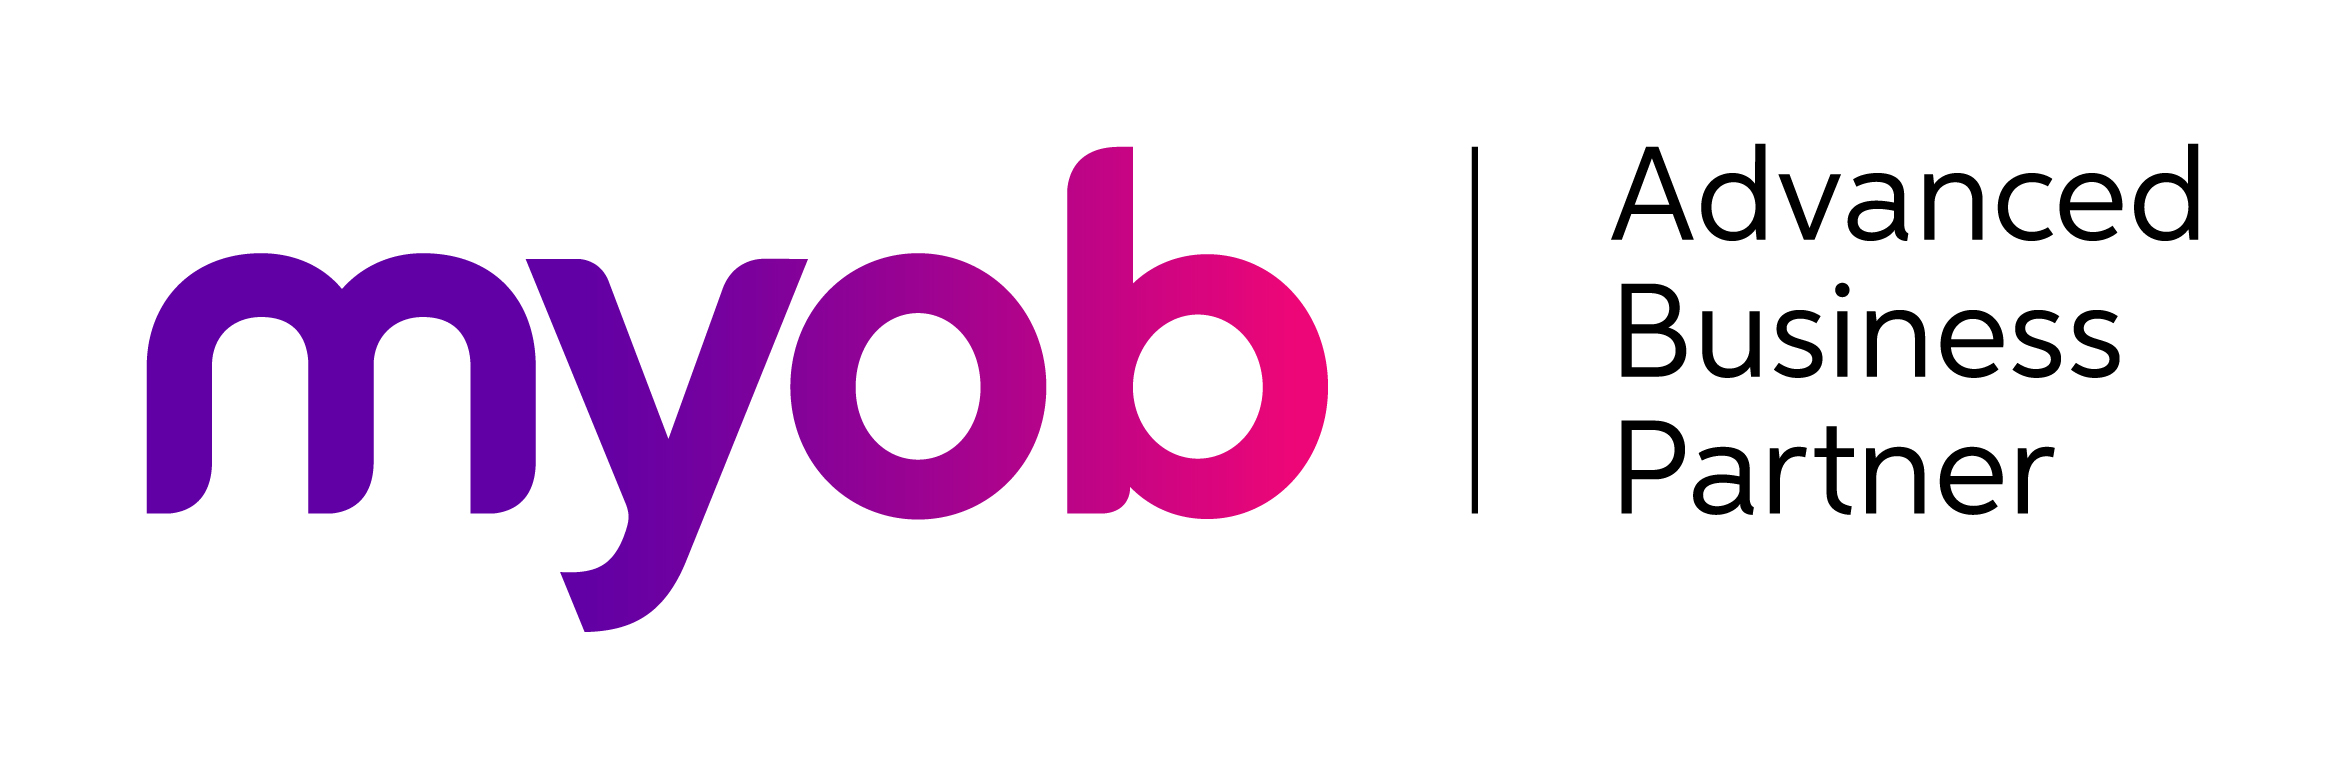 MYOB Advanced Business Partner Sydney, Melbourne and Brisbane